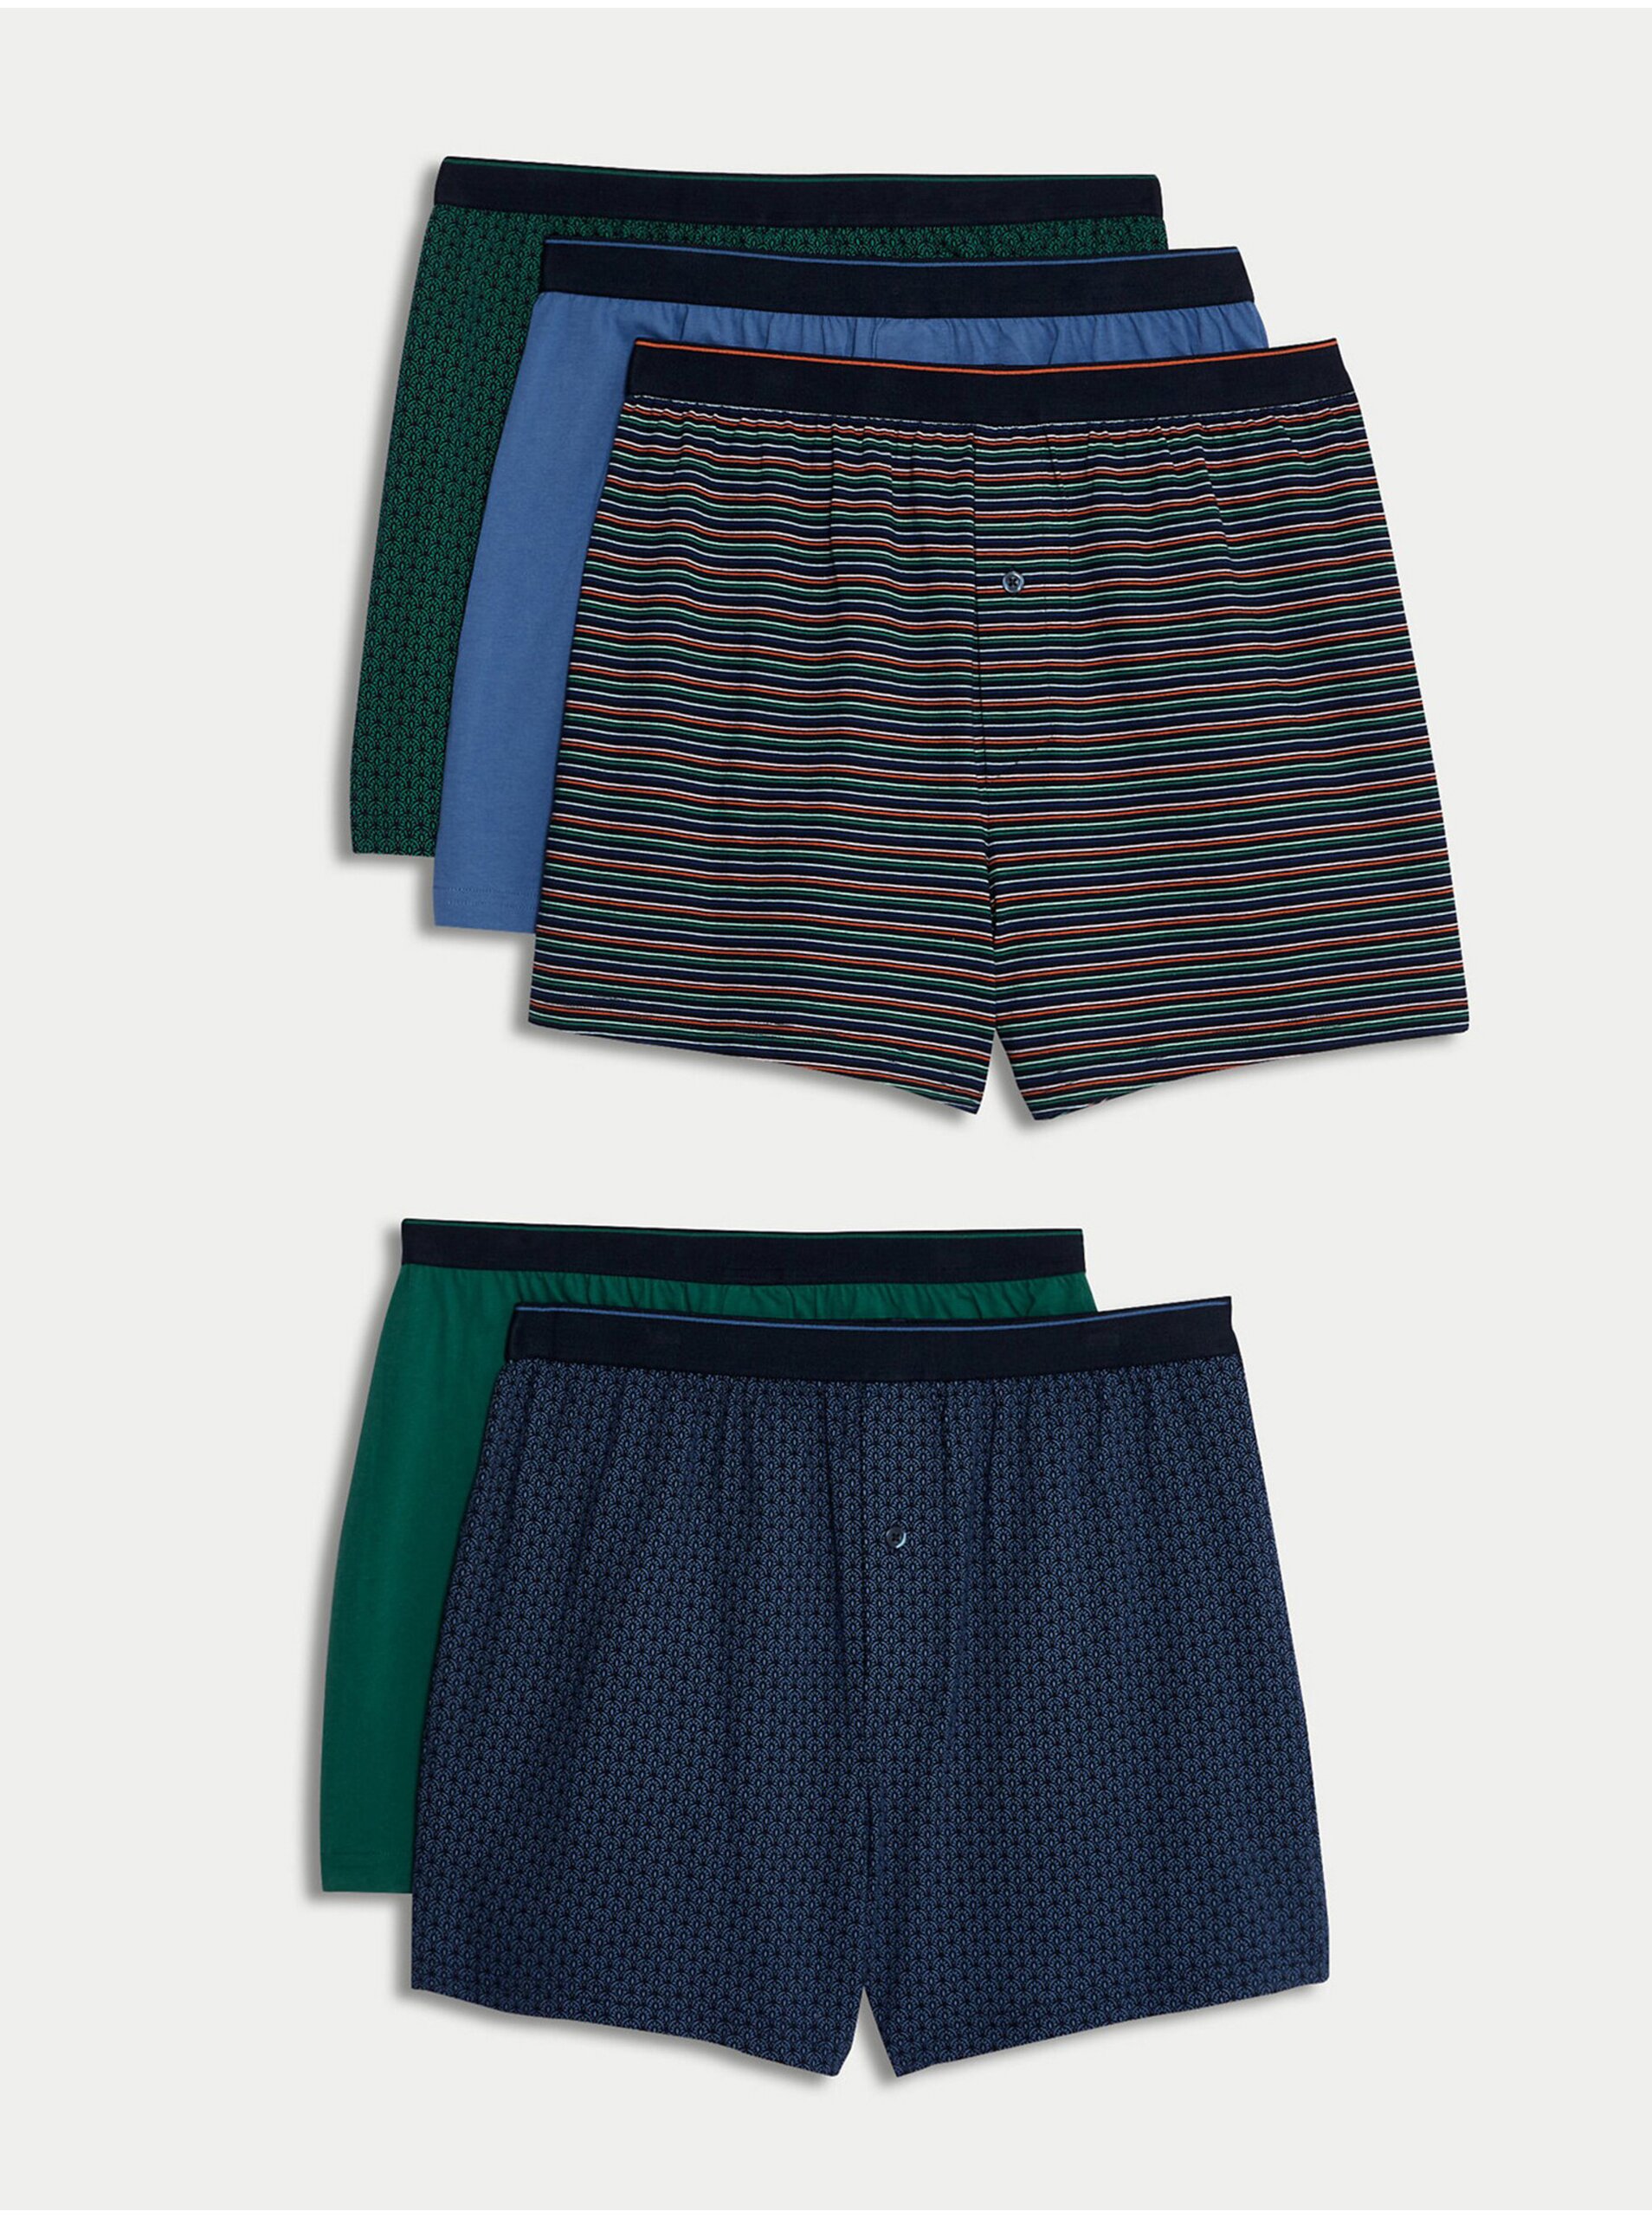 Levně Sada pěti pánských vzorovaných trenýrek v zelené a modré barvě Marks & Spencer Cool & Fresh™